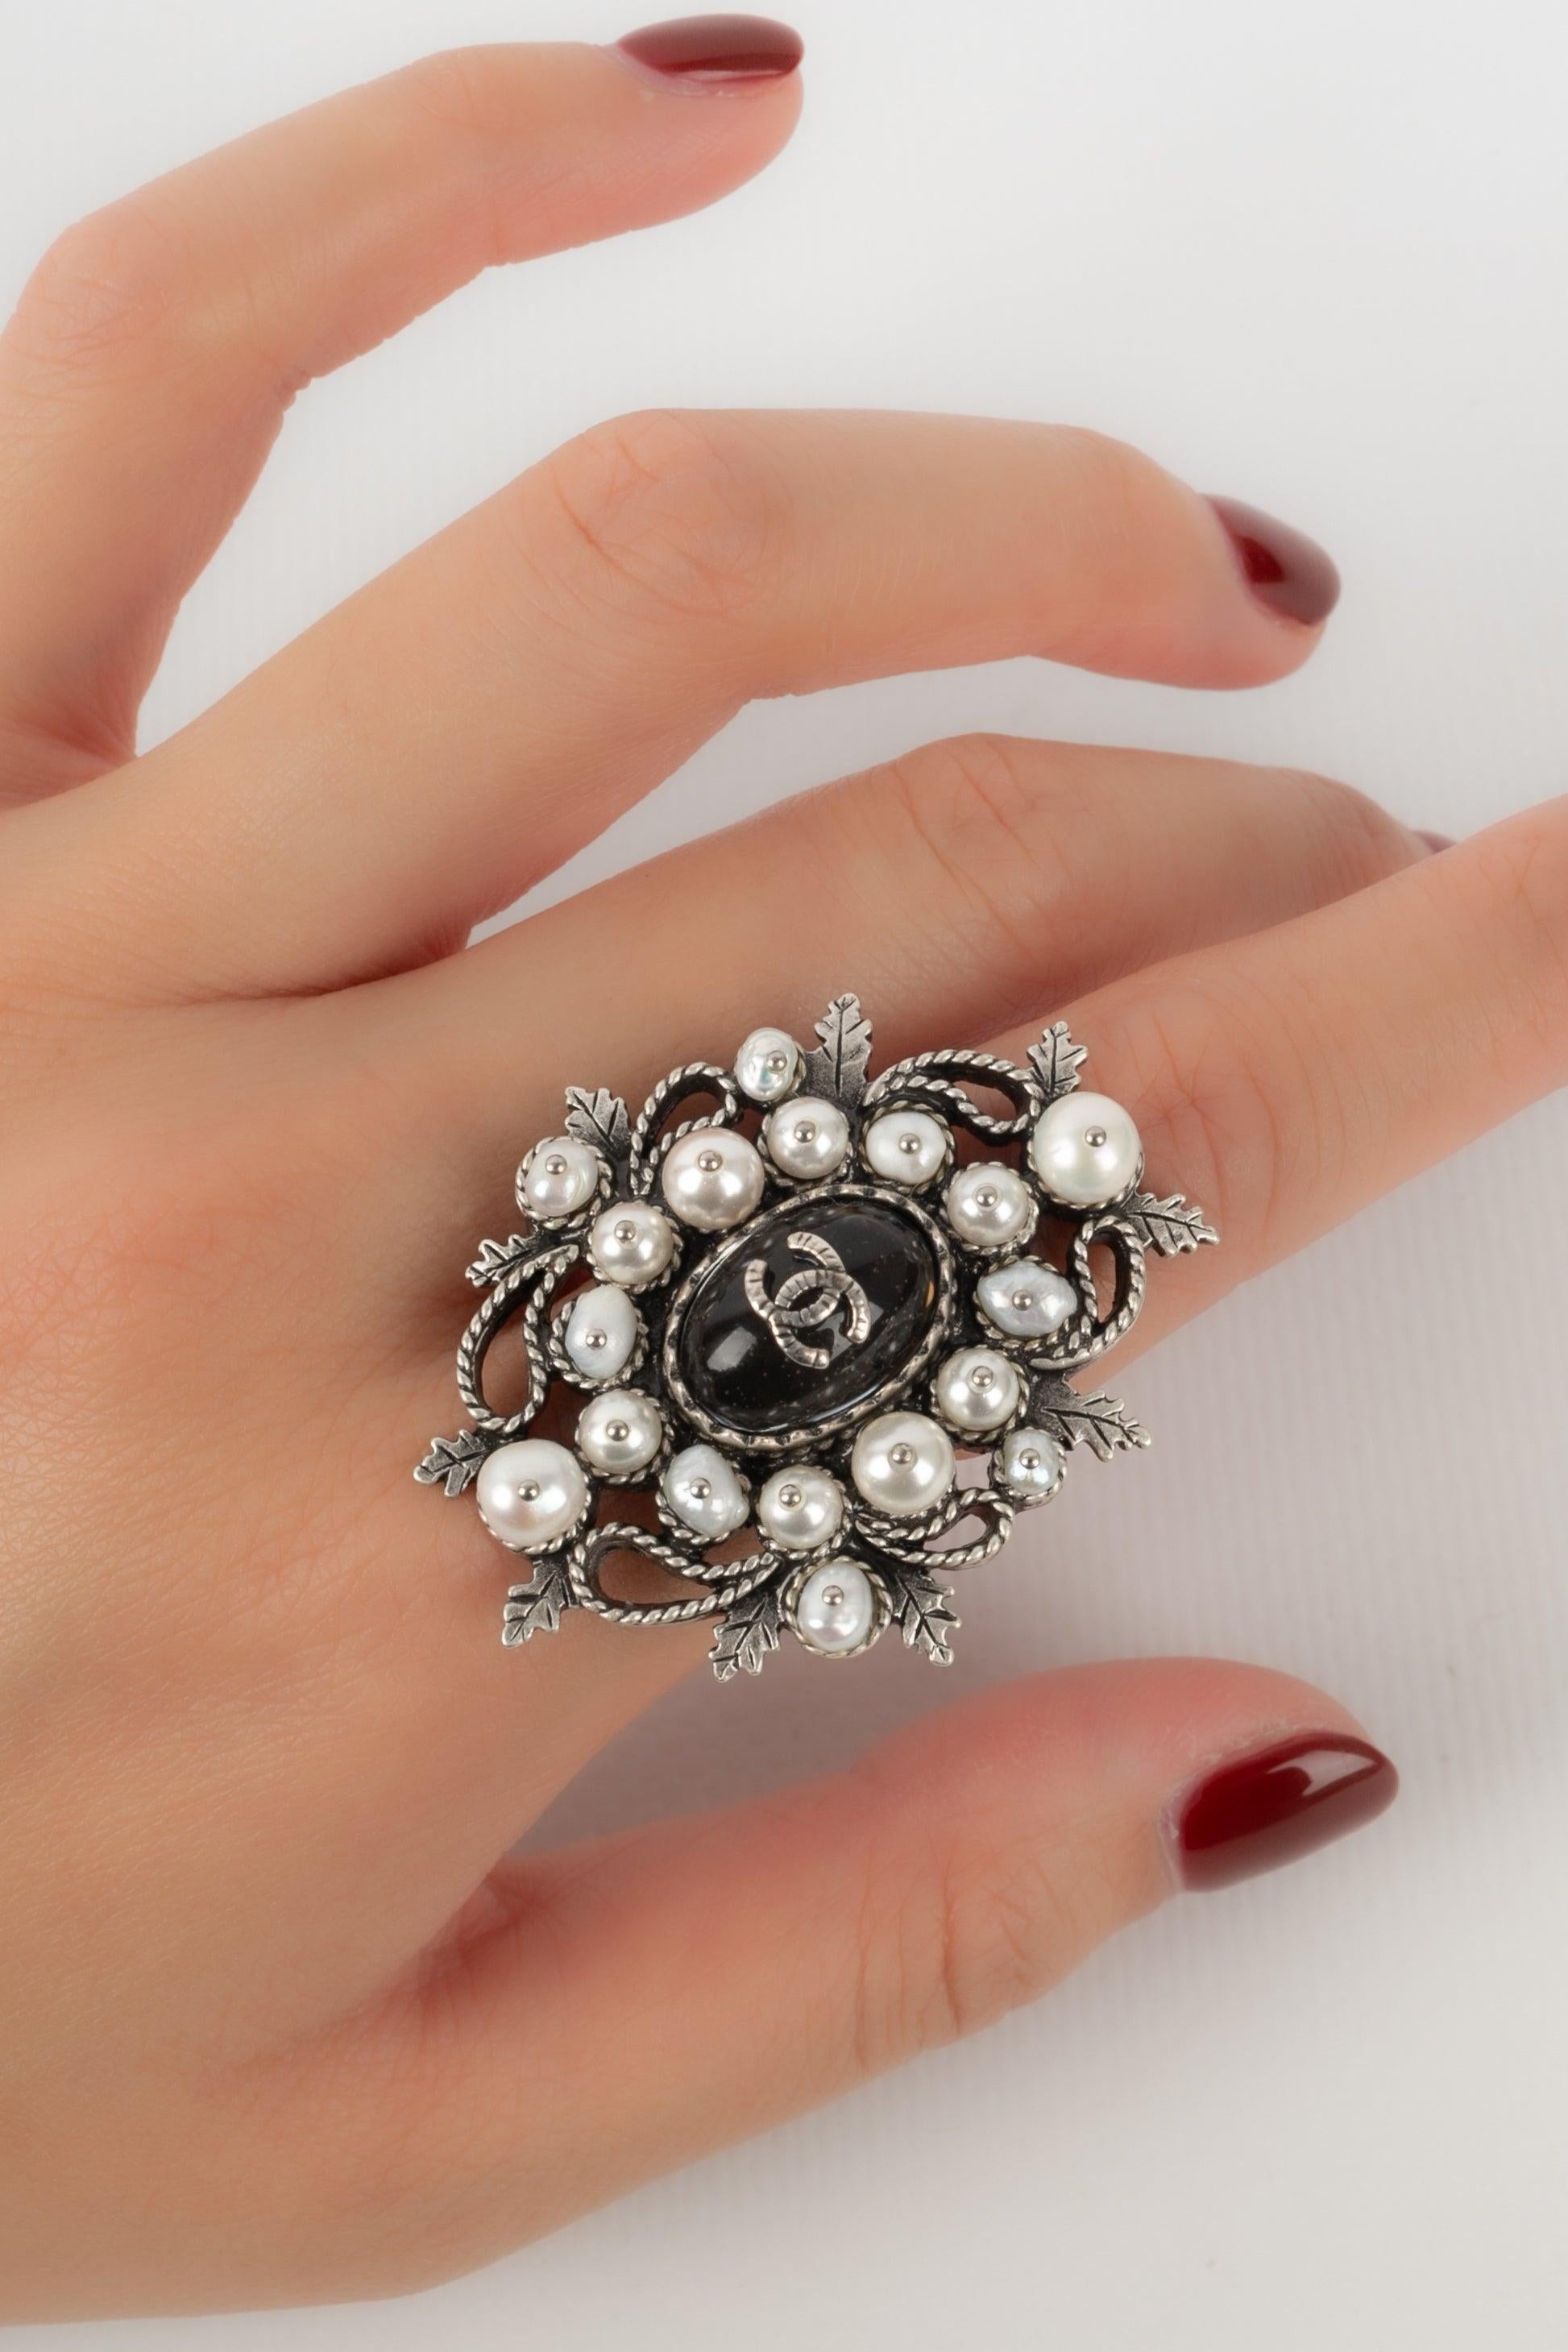 Chanel, bague CC en métal argenté avec perles de costume, 2015 4